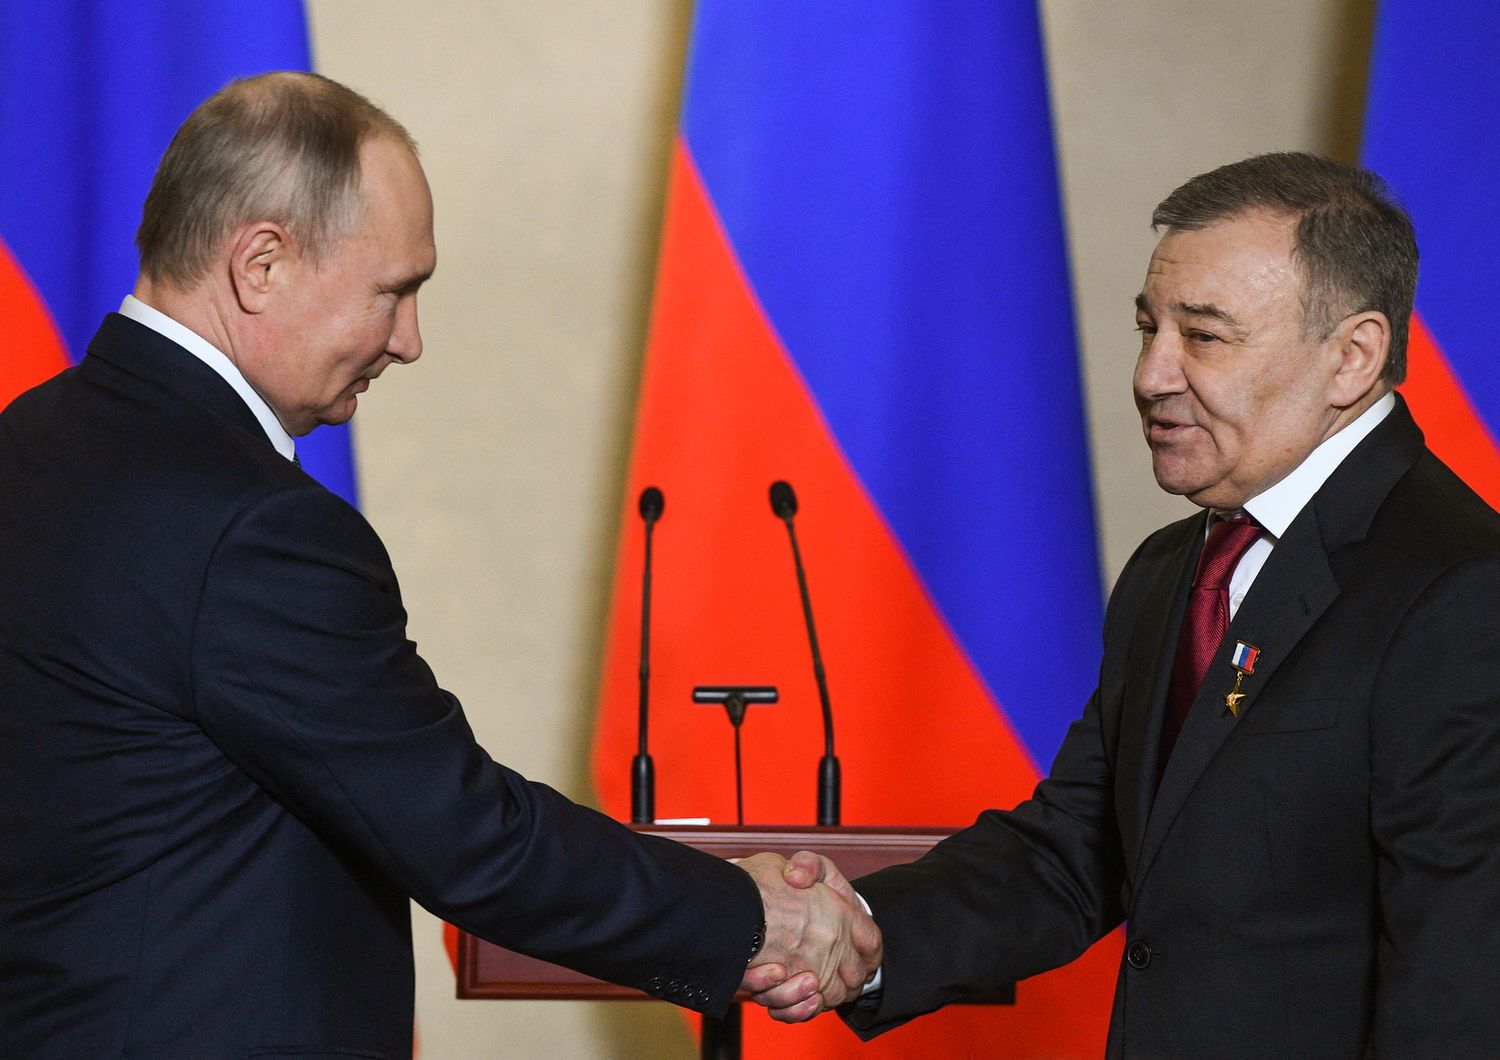 Ilpresidente della Rusia Vladimr Putin premia Arkady Rotenberg&nbsp;